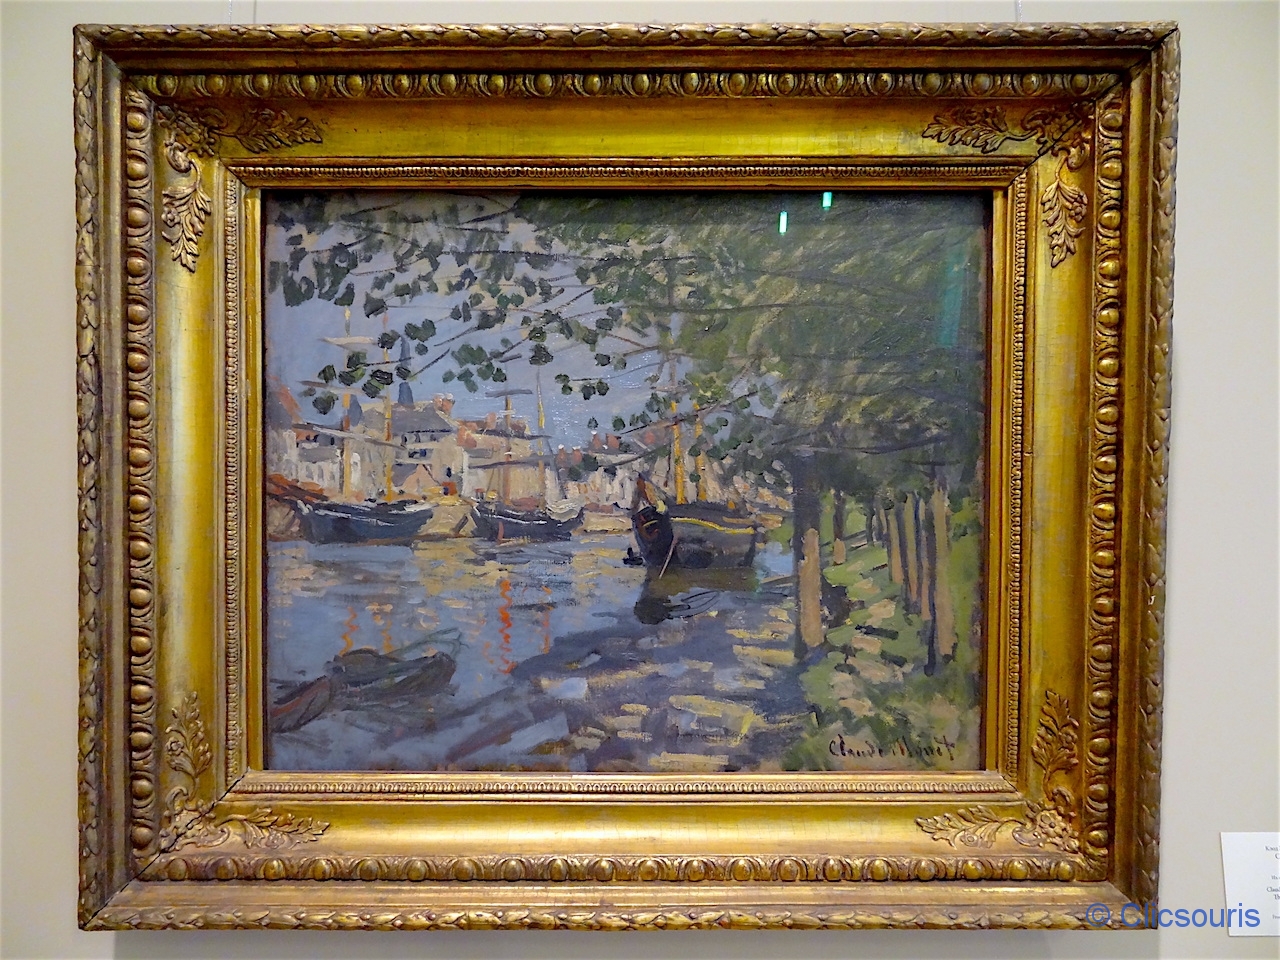 Saint-Pétersbourg état-major Monet